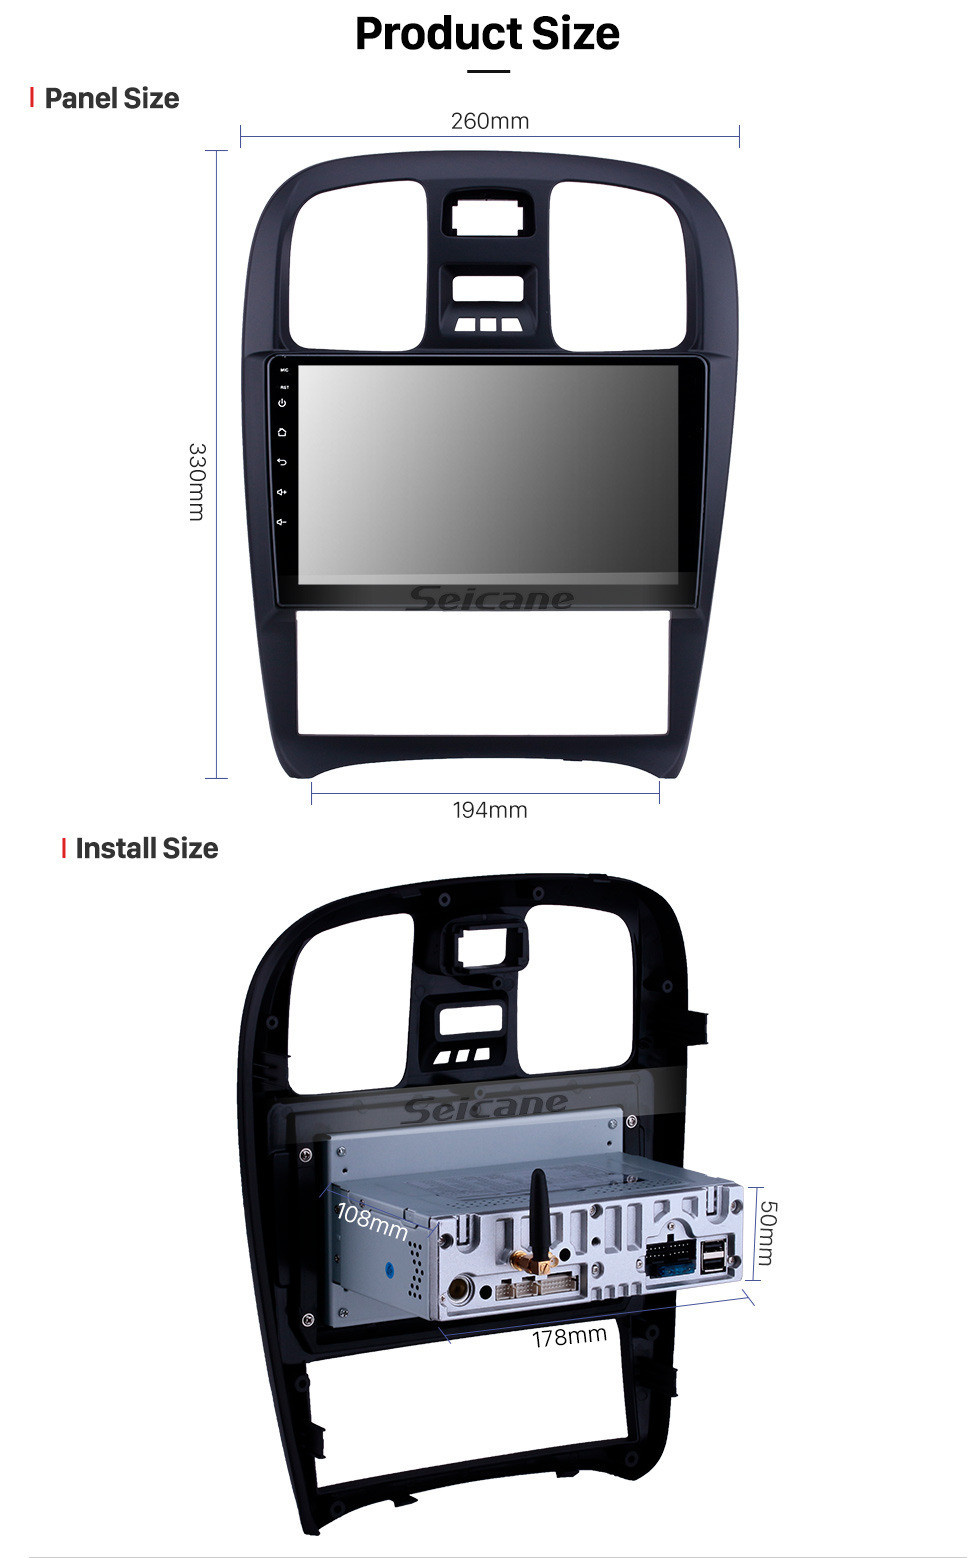 Seicane OEM 9-дюймовый Android 11.0 Radio для 2003-2009 Hyundai Sonata Bluetooth HD с сенсорным экраном GPS-навигация Поддержка Carplay Камера заднего вида